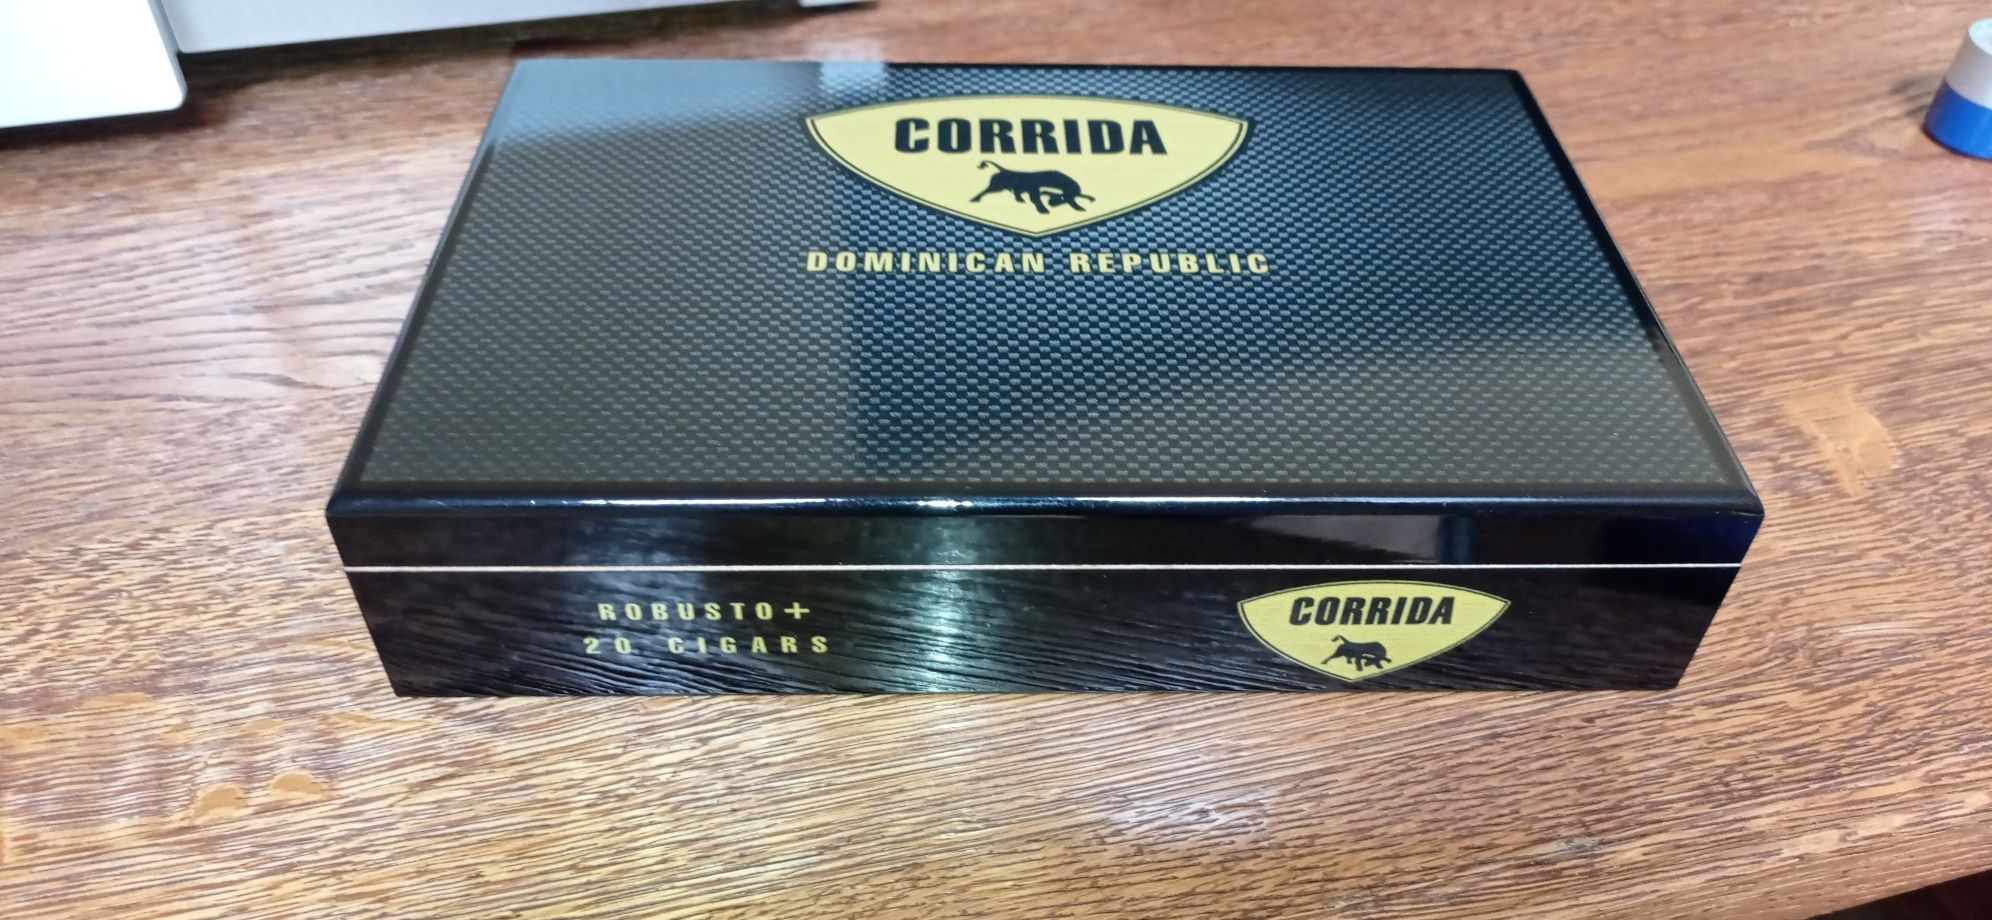 Pudełko do cygar Corrida,nowe, piękne,czarne